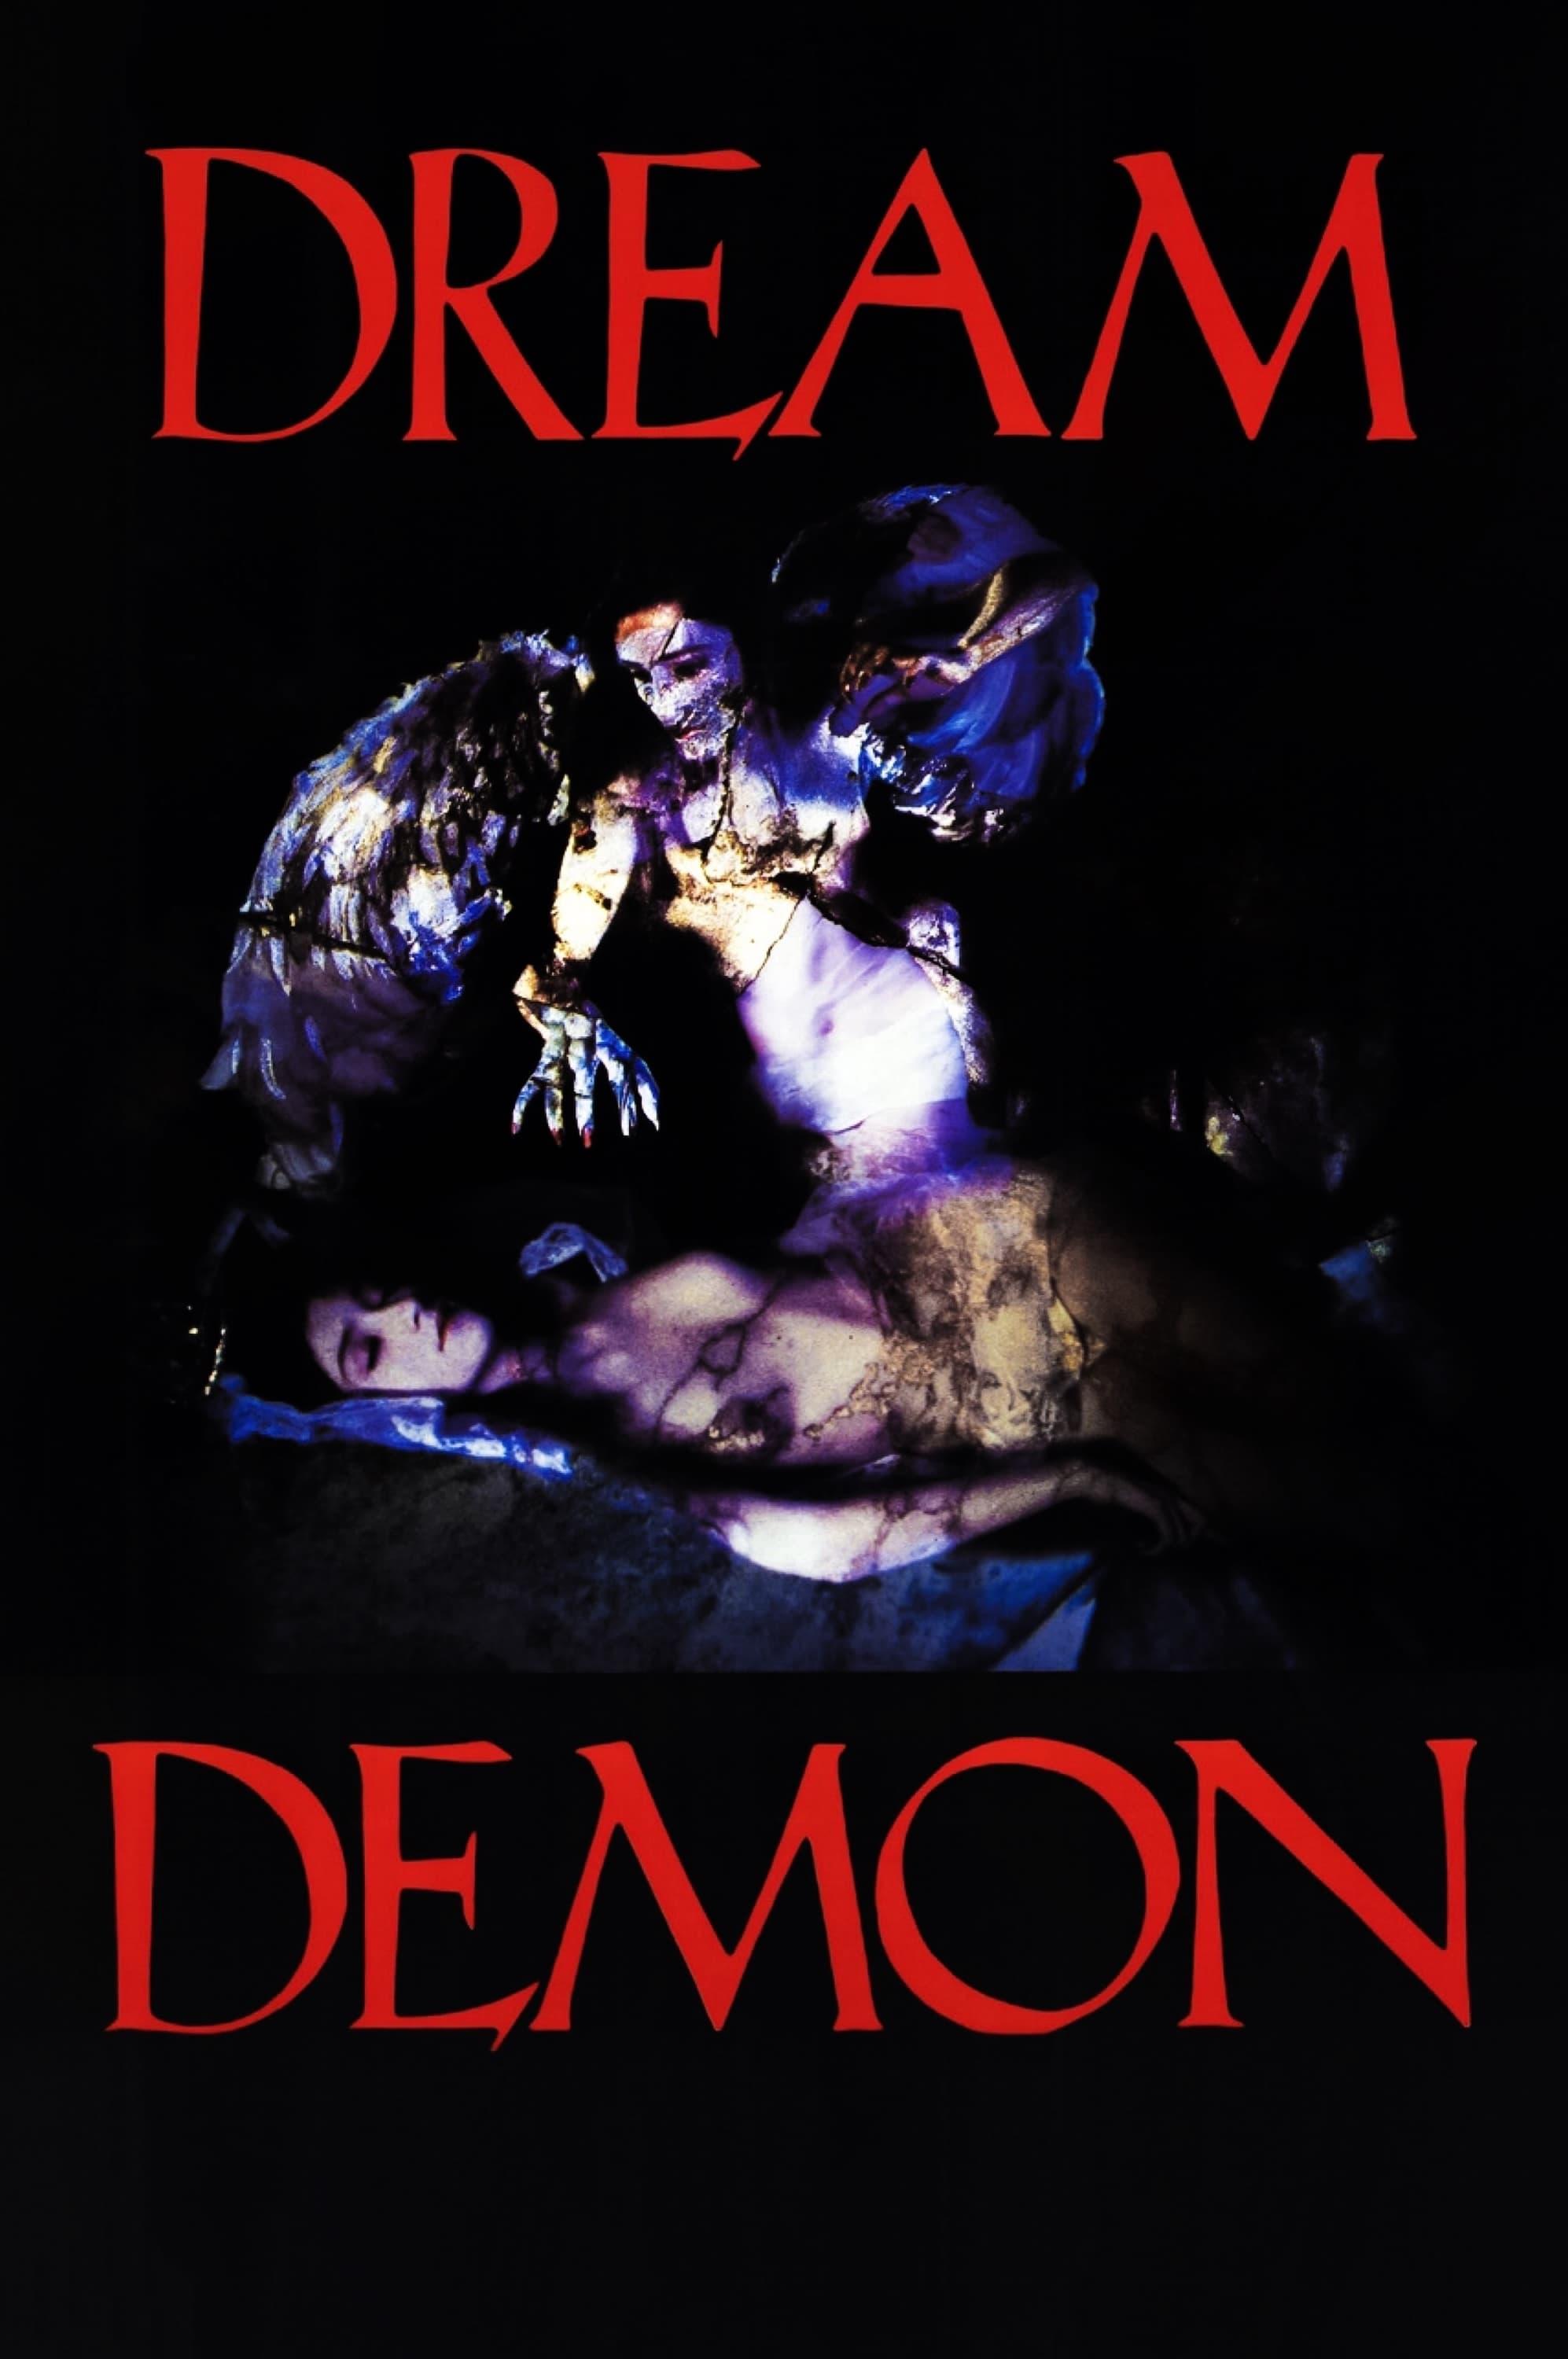 Dream Demon poster